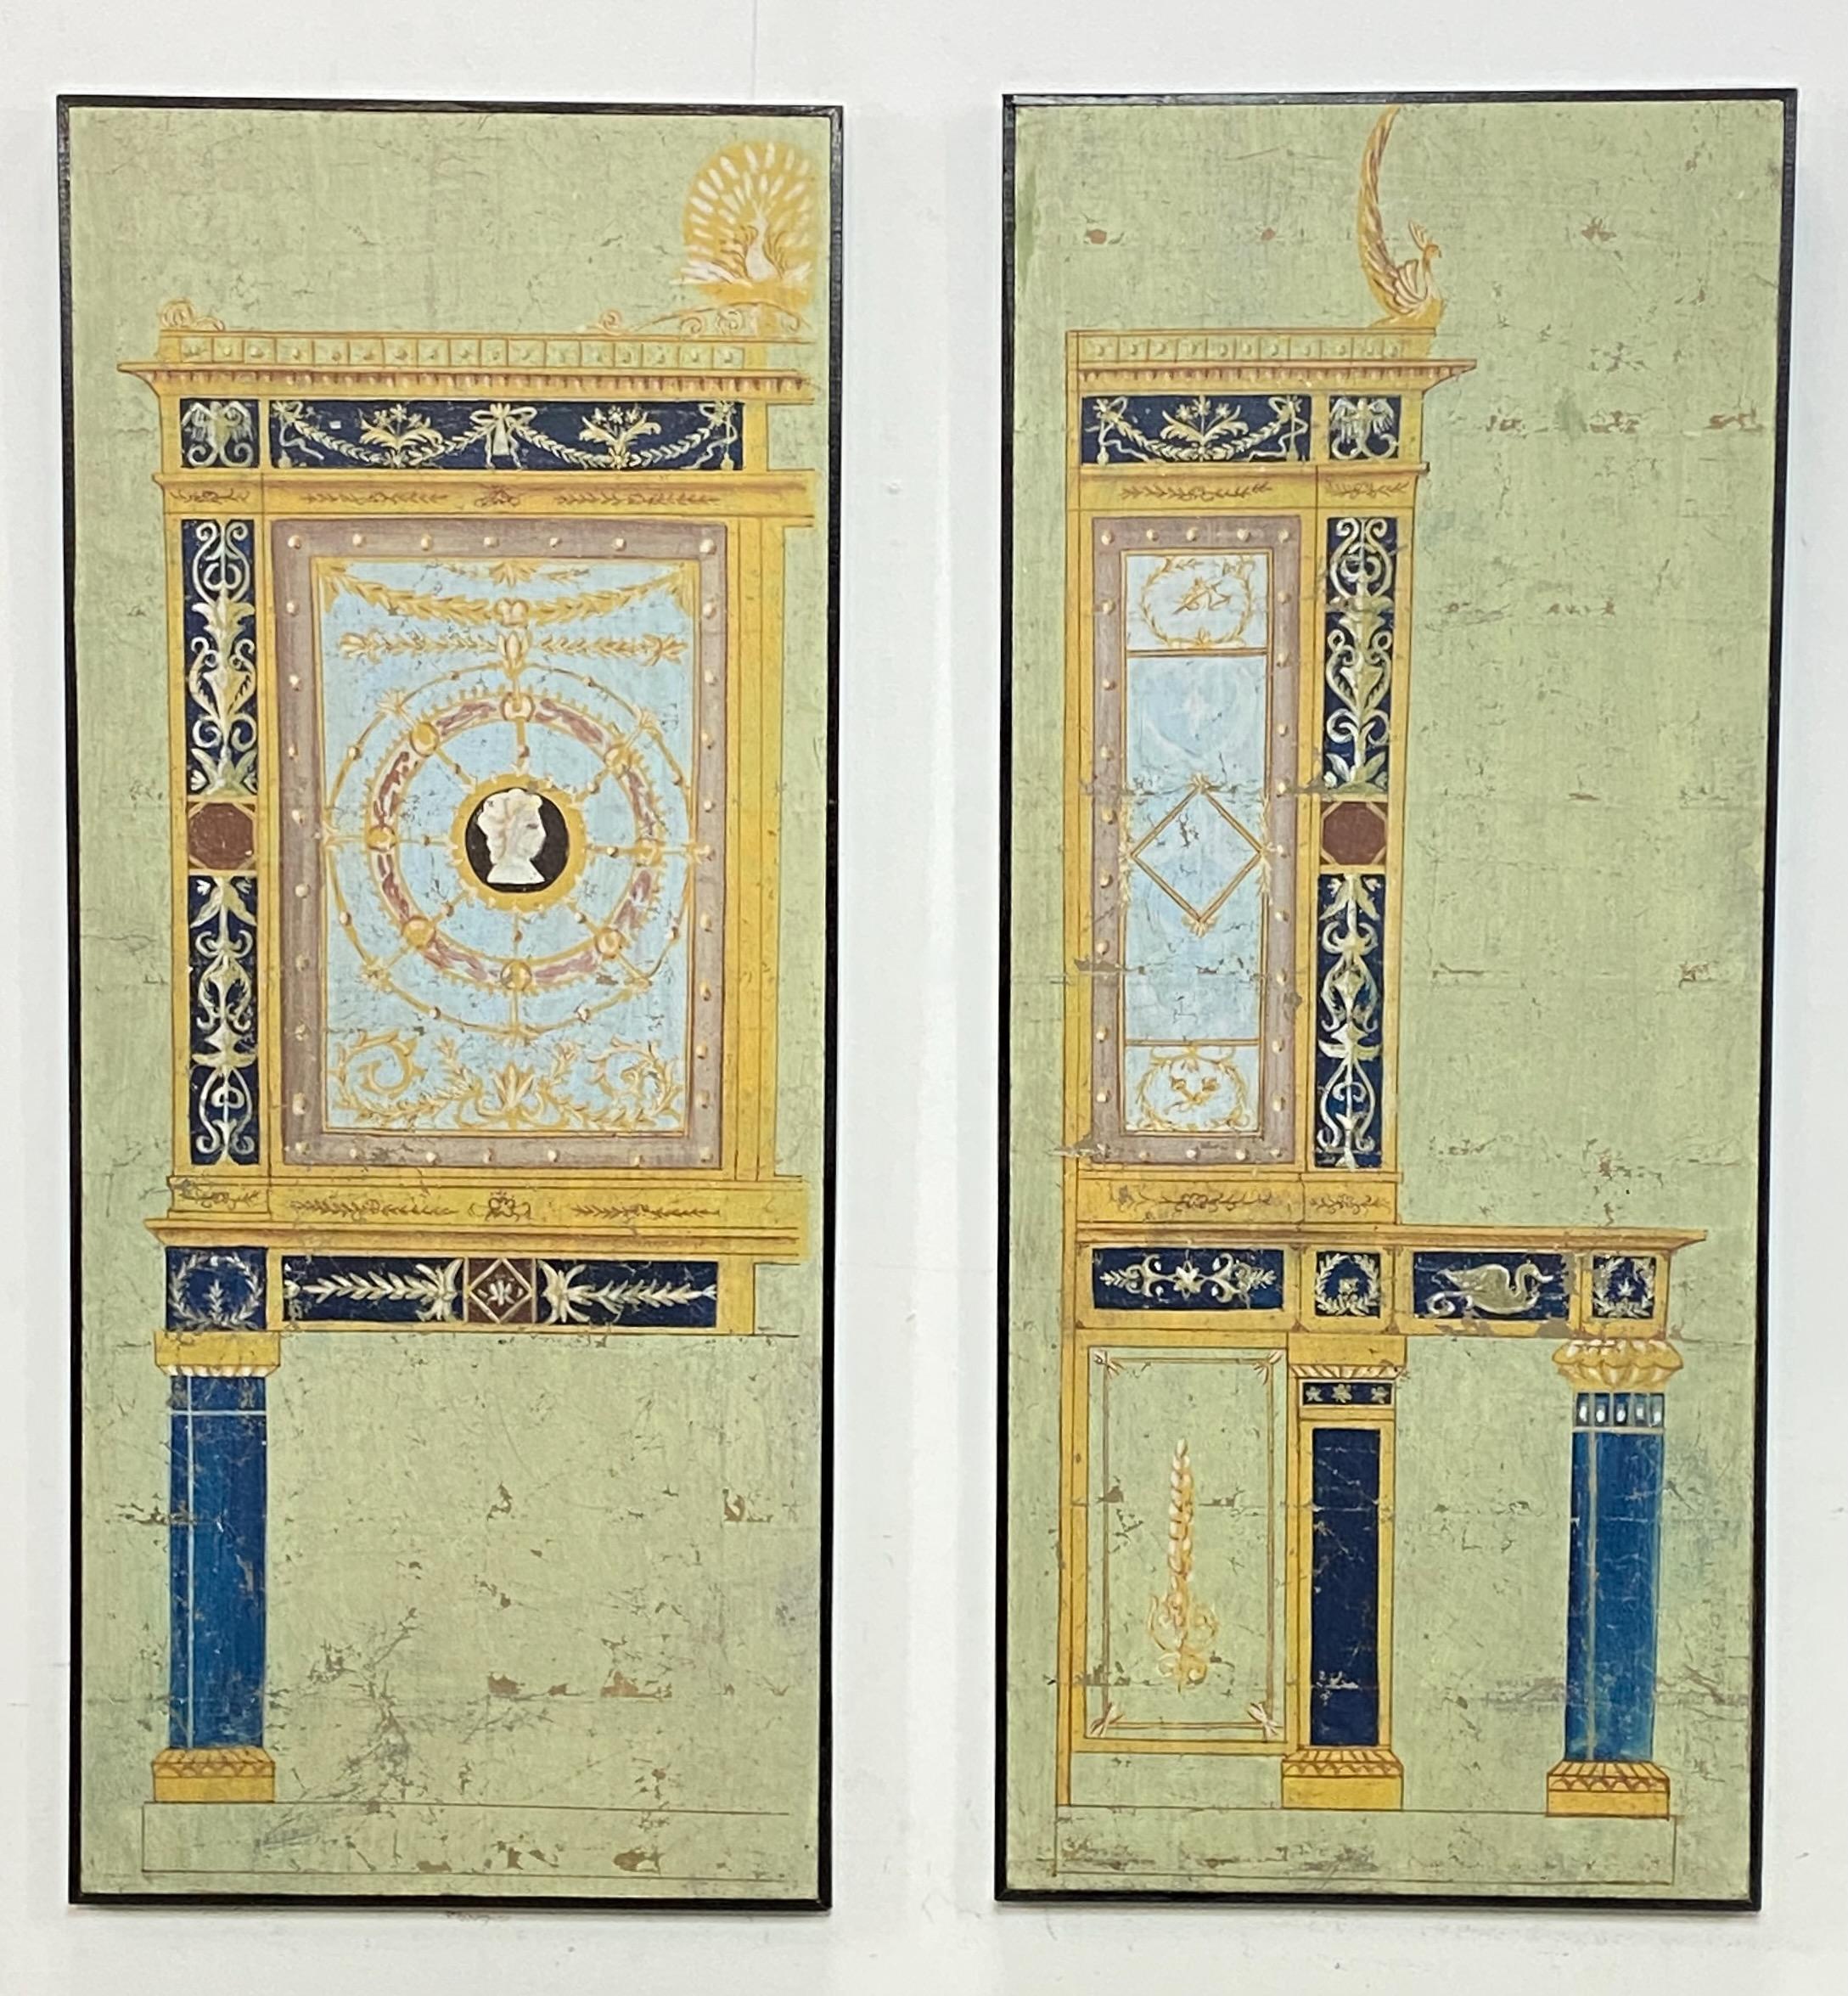 Ein Paar handgemalte Gouache (farbige Kreide) Aquarelle auf Papier, im Stil der Kaiserzeit aus Pompeji Italien. 
Sie sind wahrscheinlich Teil eines dekorativen Paravents oder einer Wandmalerei aus dem späten 18. oder frühen 19. 
In sehr gutem